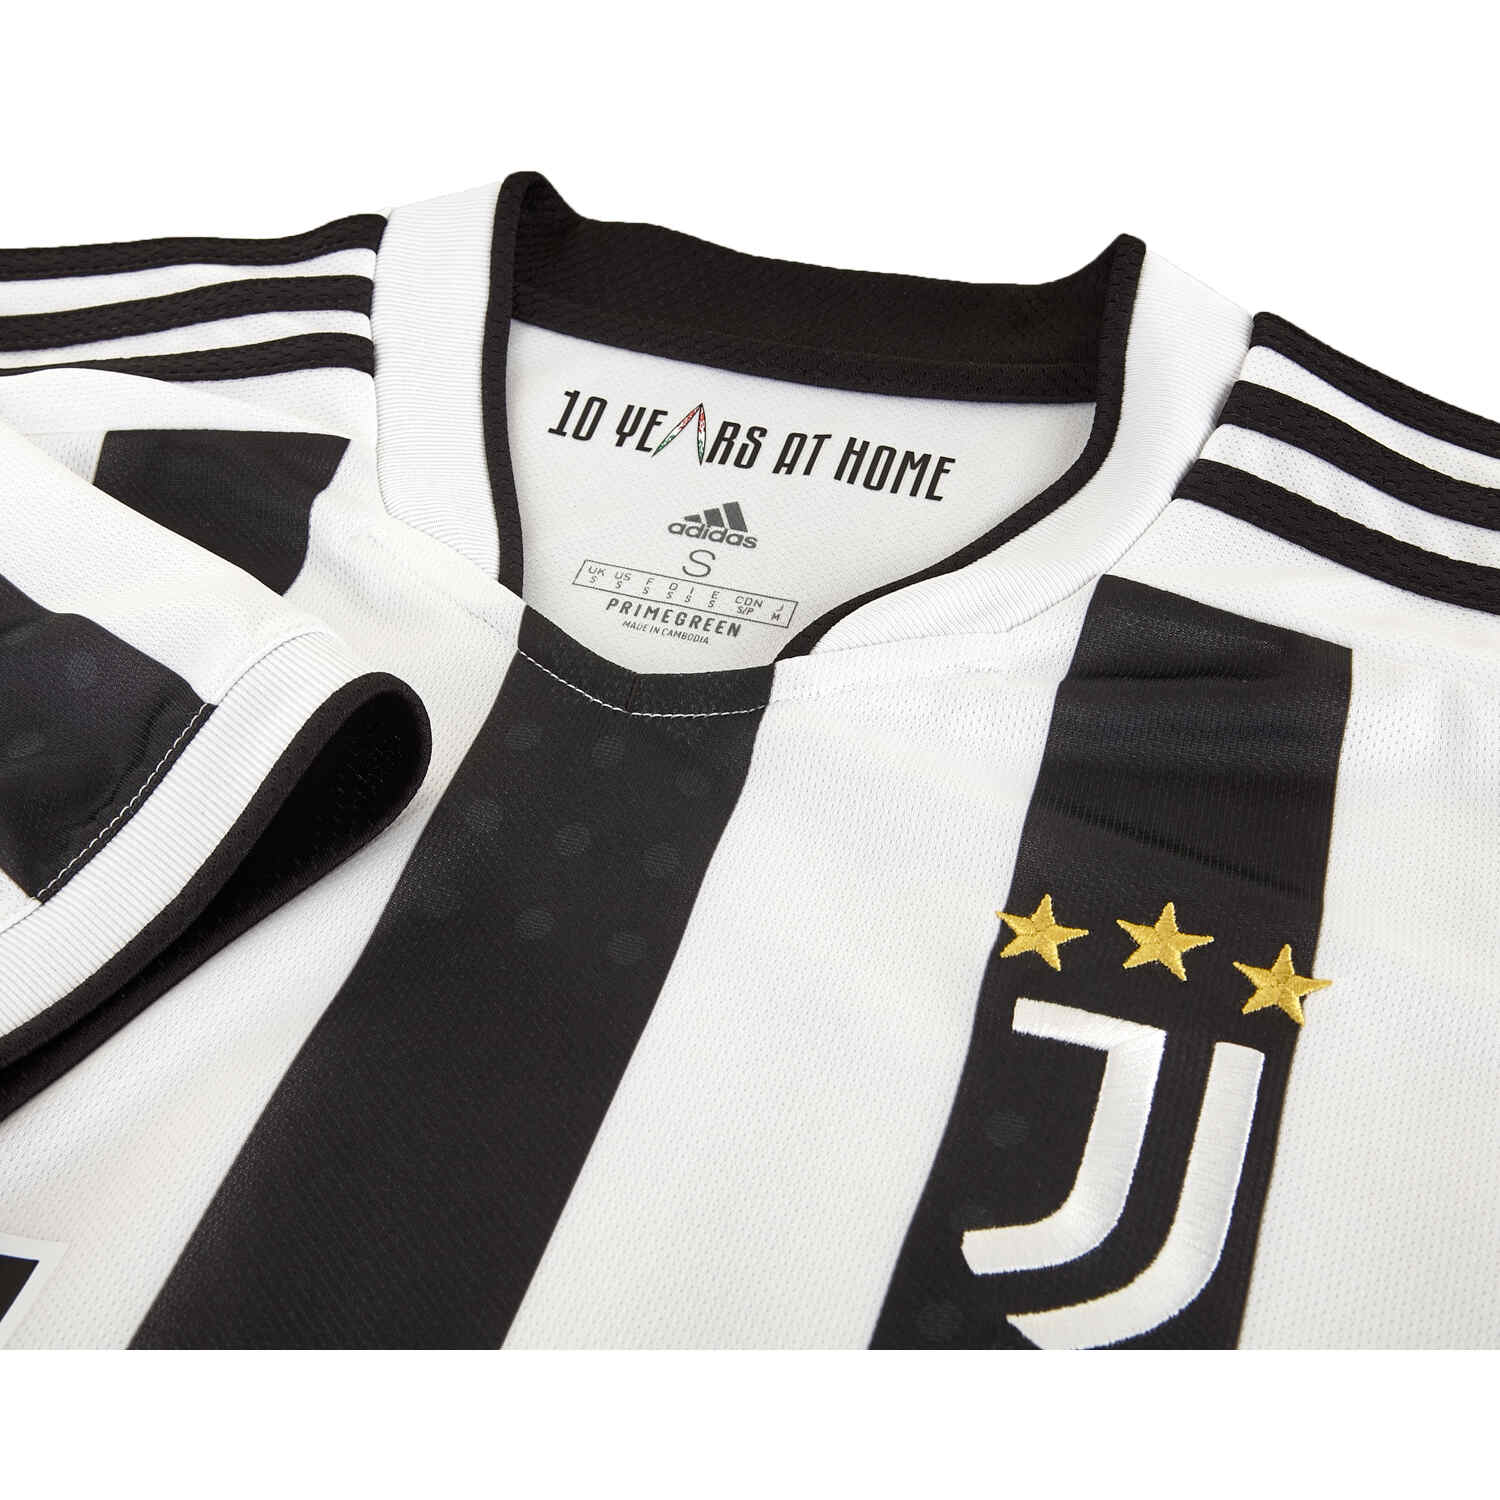 Adidas Men's Juventus 21/22 Home Jersey, White/Black / L